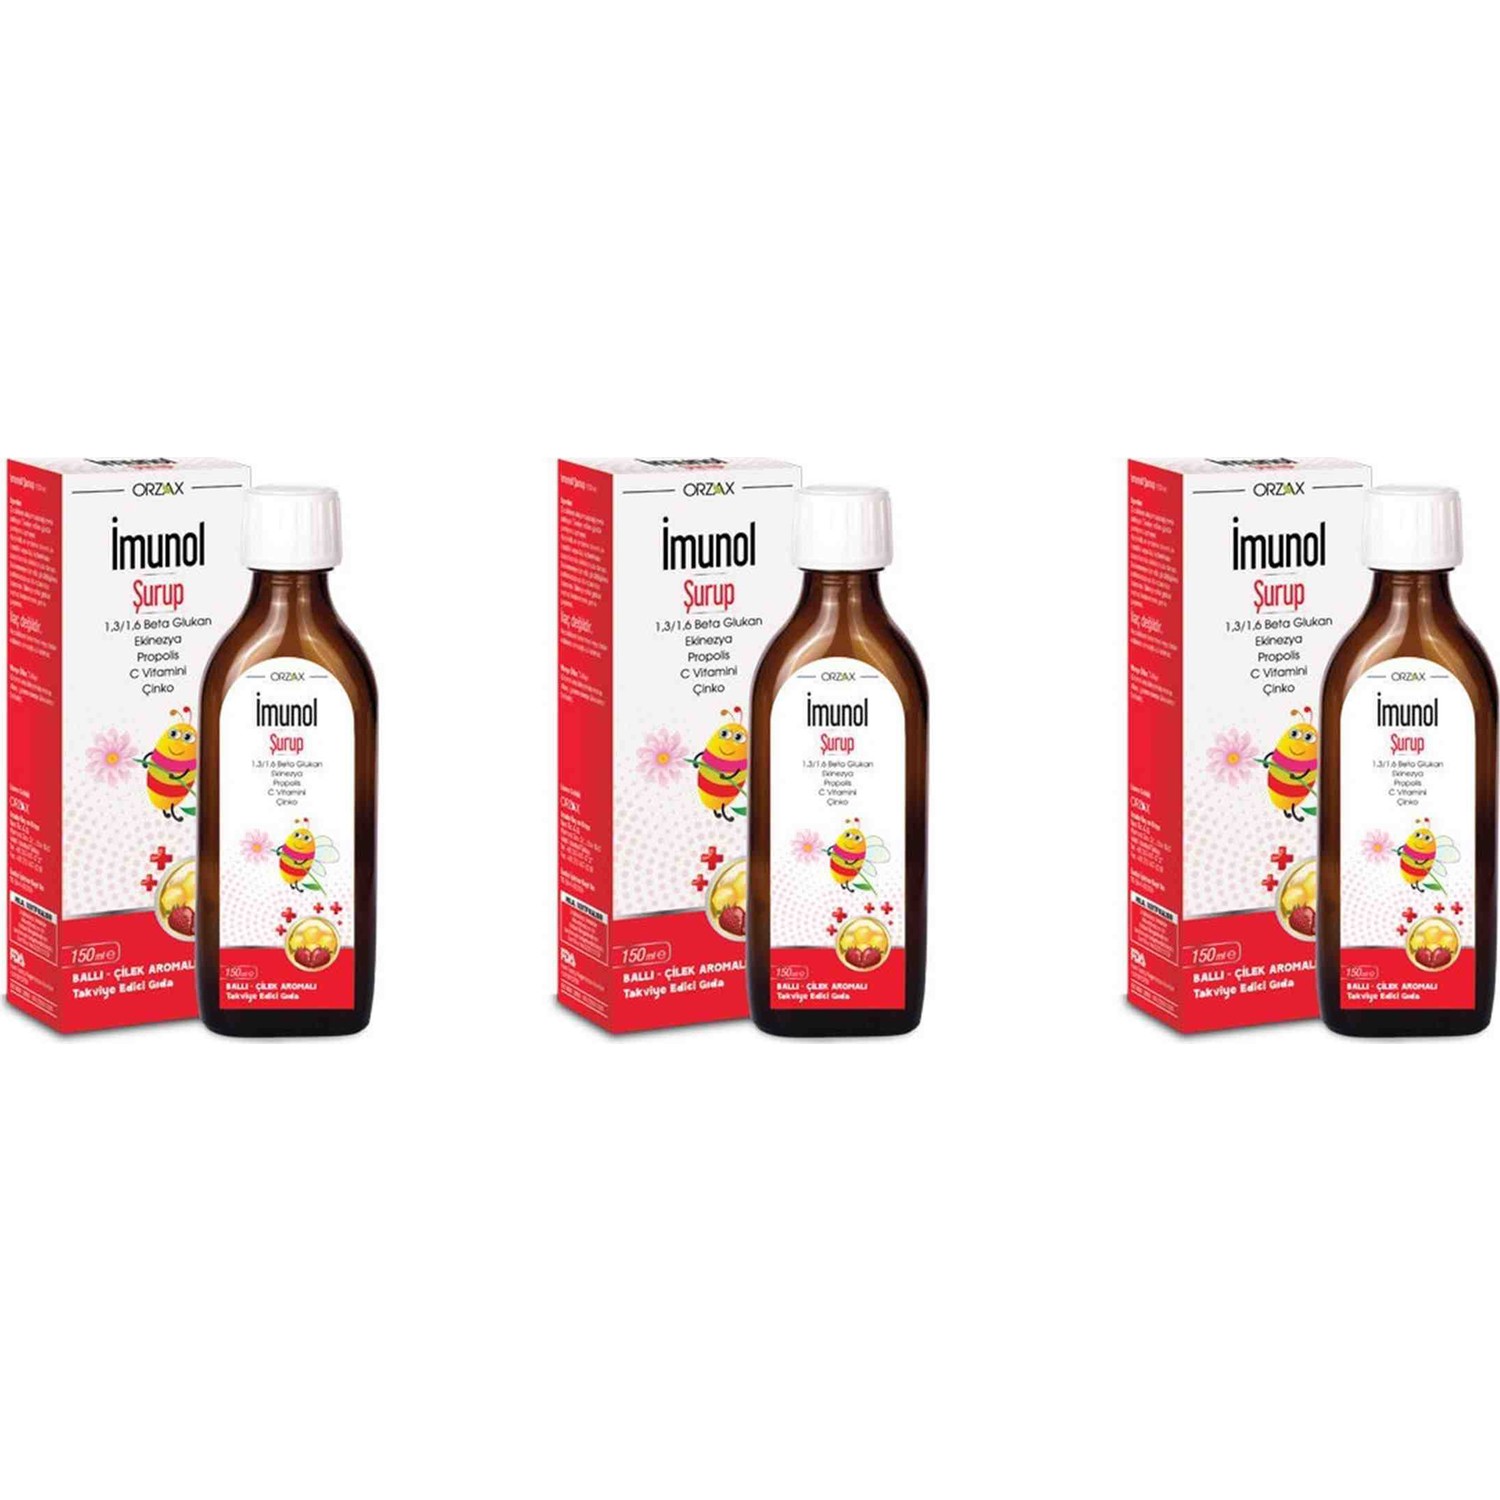 Сироп имунол Orzax с медово-клубничным вкусом, 3 упаковки по 150 мл